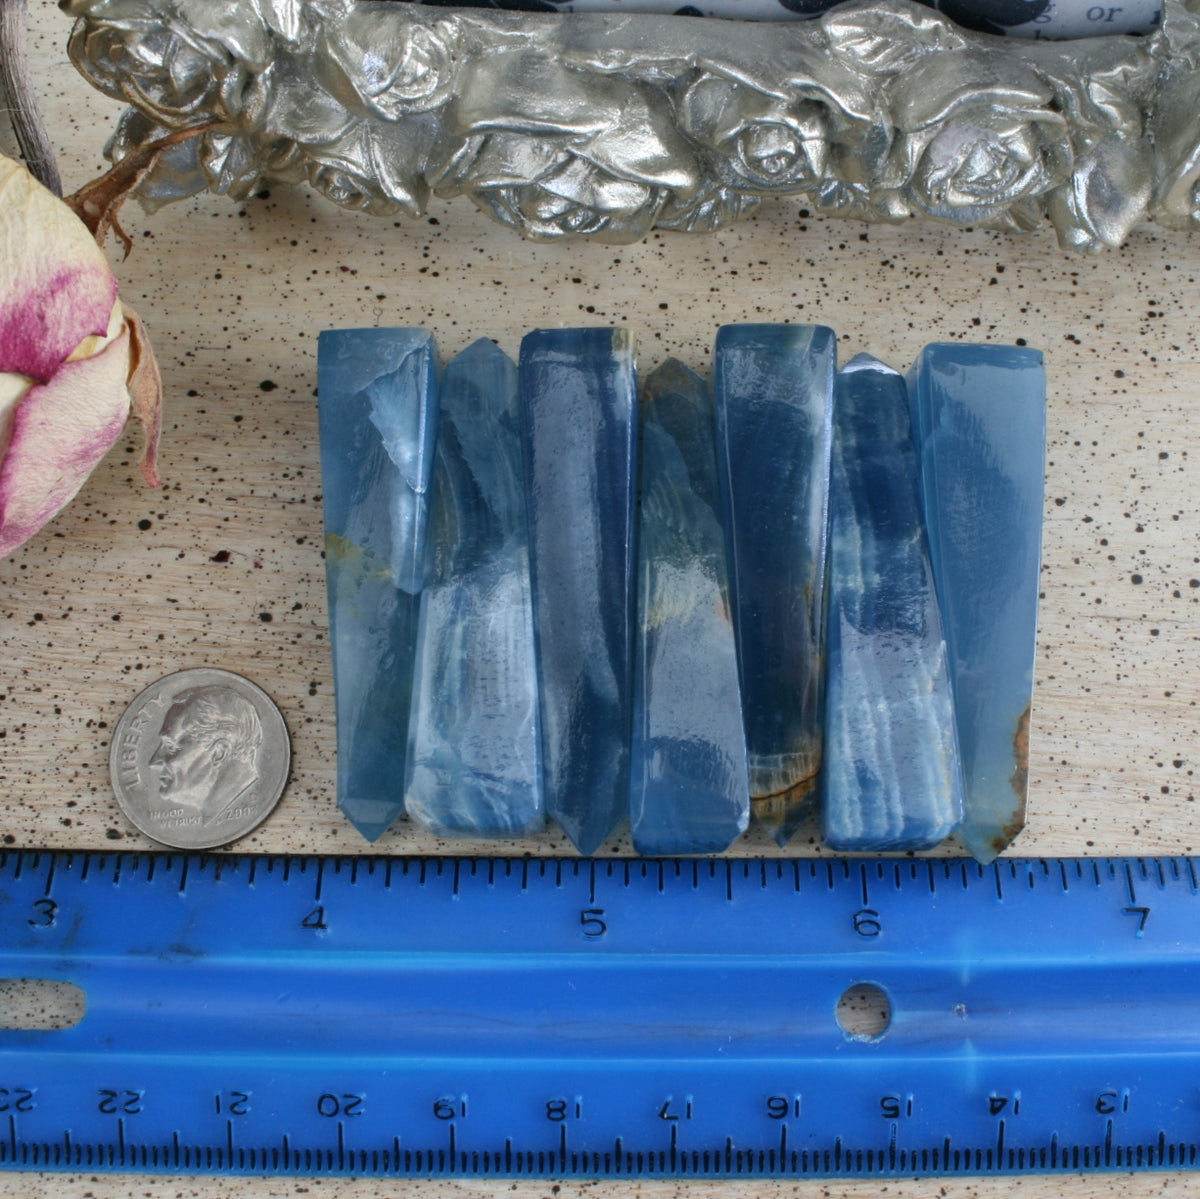 Blue Calcite / Blue Onyx Obelisk from Argentina, also called Lemurian Aquatine Calcite, OB5